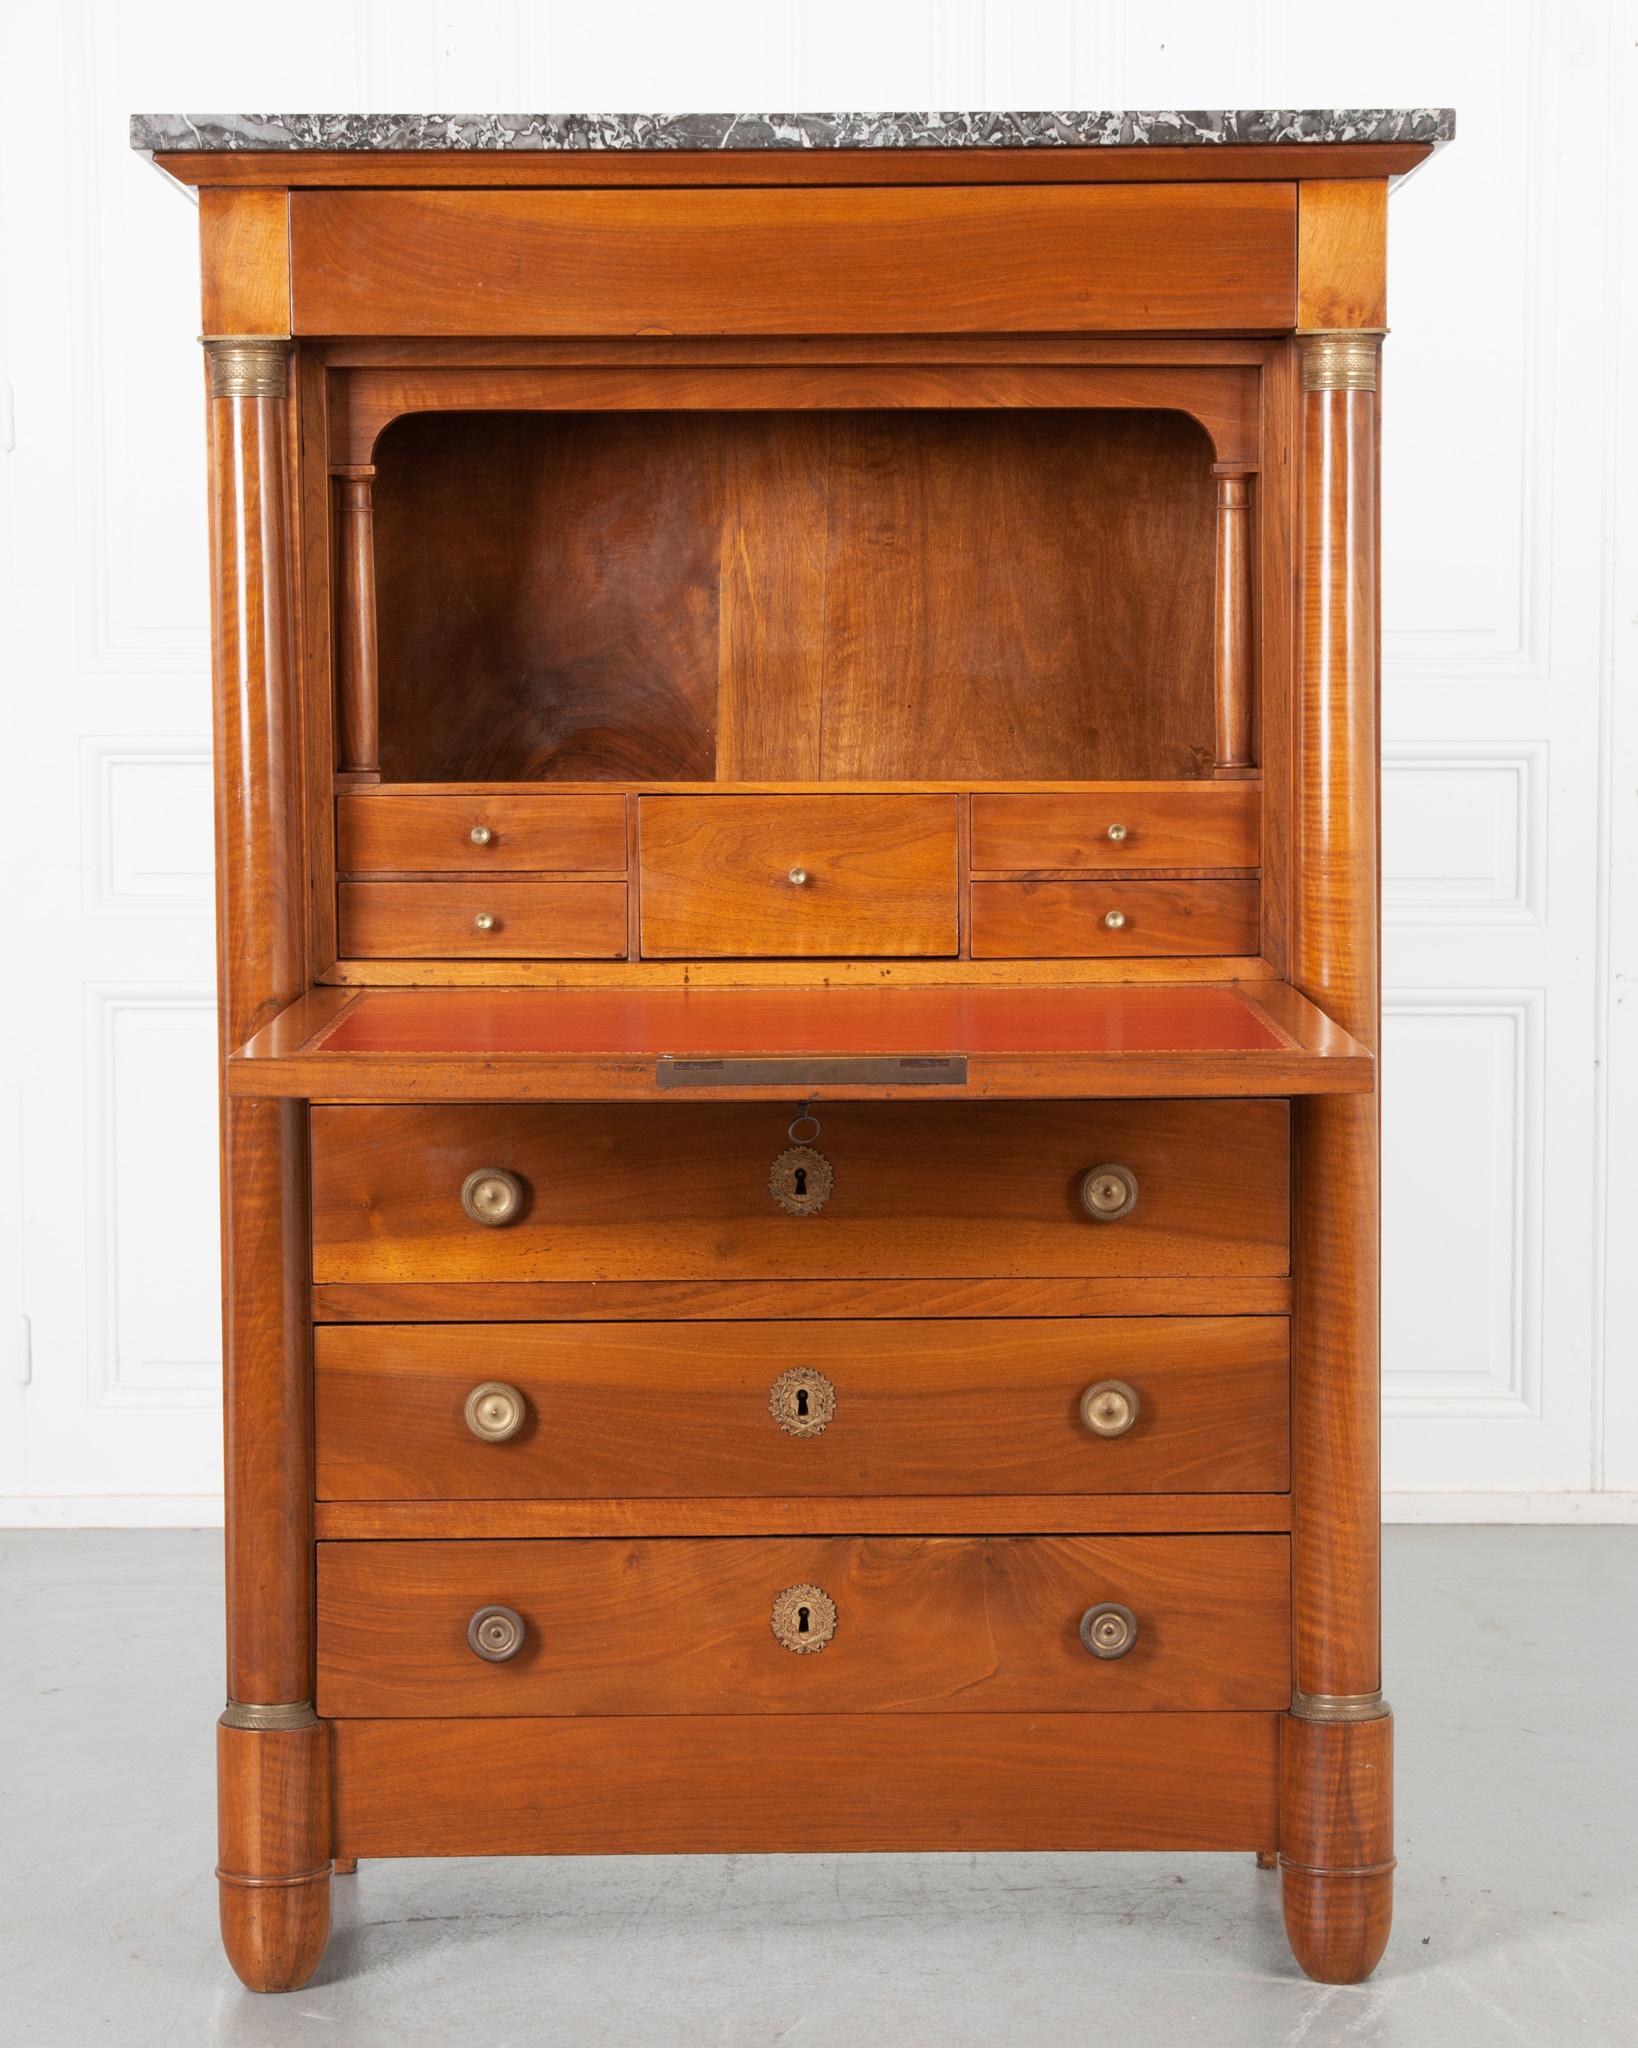 Un secre'taire a` abattant en acajou du 19e sie` cle de France, vers 1810. Ce bureau présente un exceptionnel plateau en marbre anthracite reposant sur un unique tiroir dissimulé dans le tablier. Juste en dessous du tiroir supérieur, l'avant du